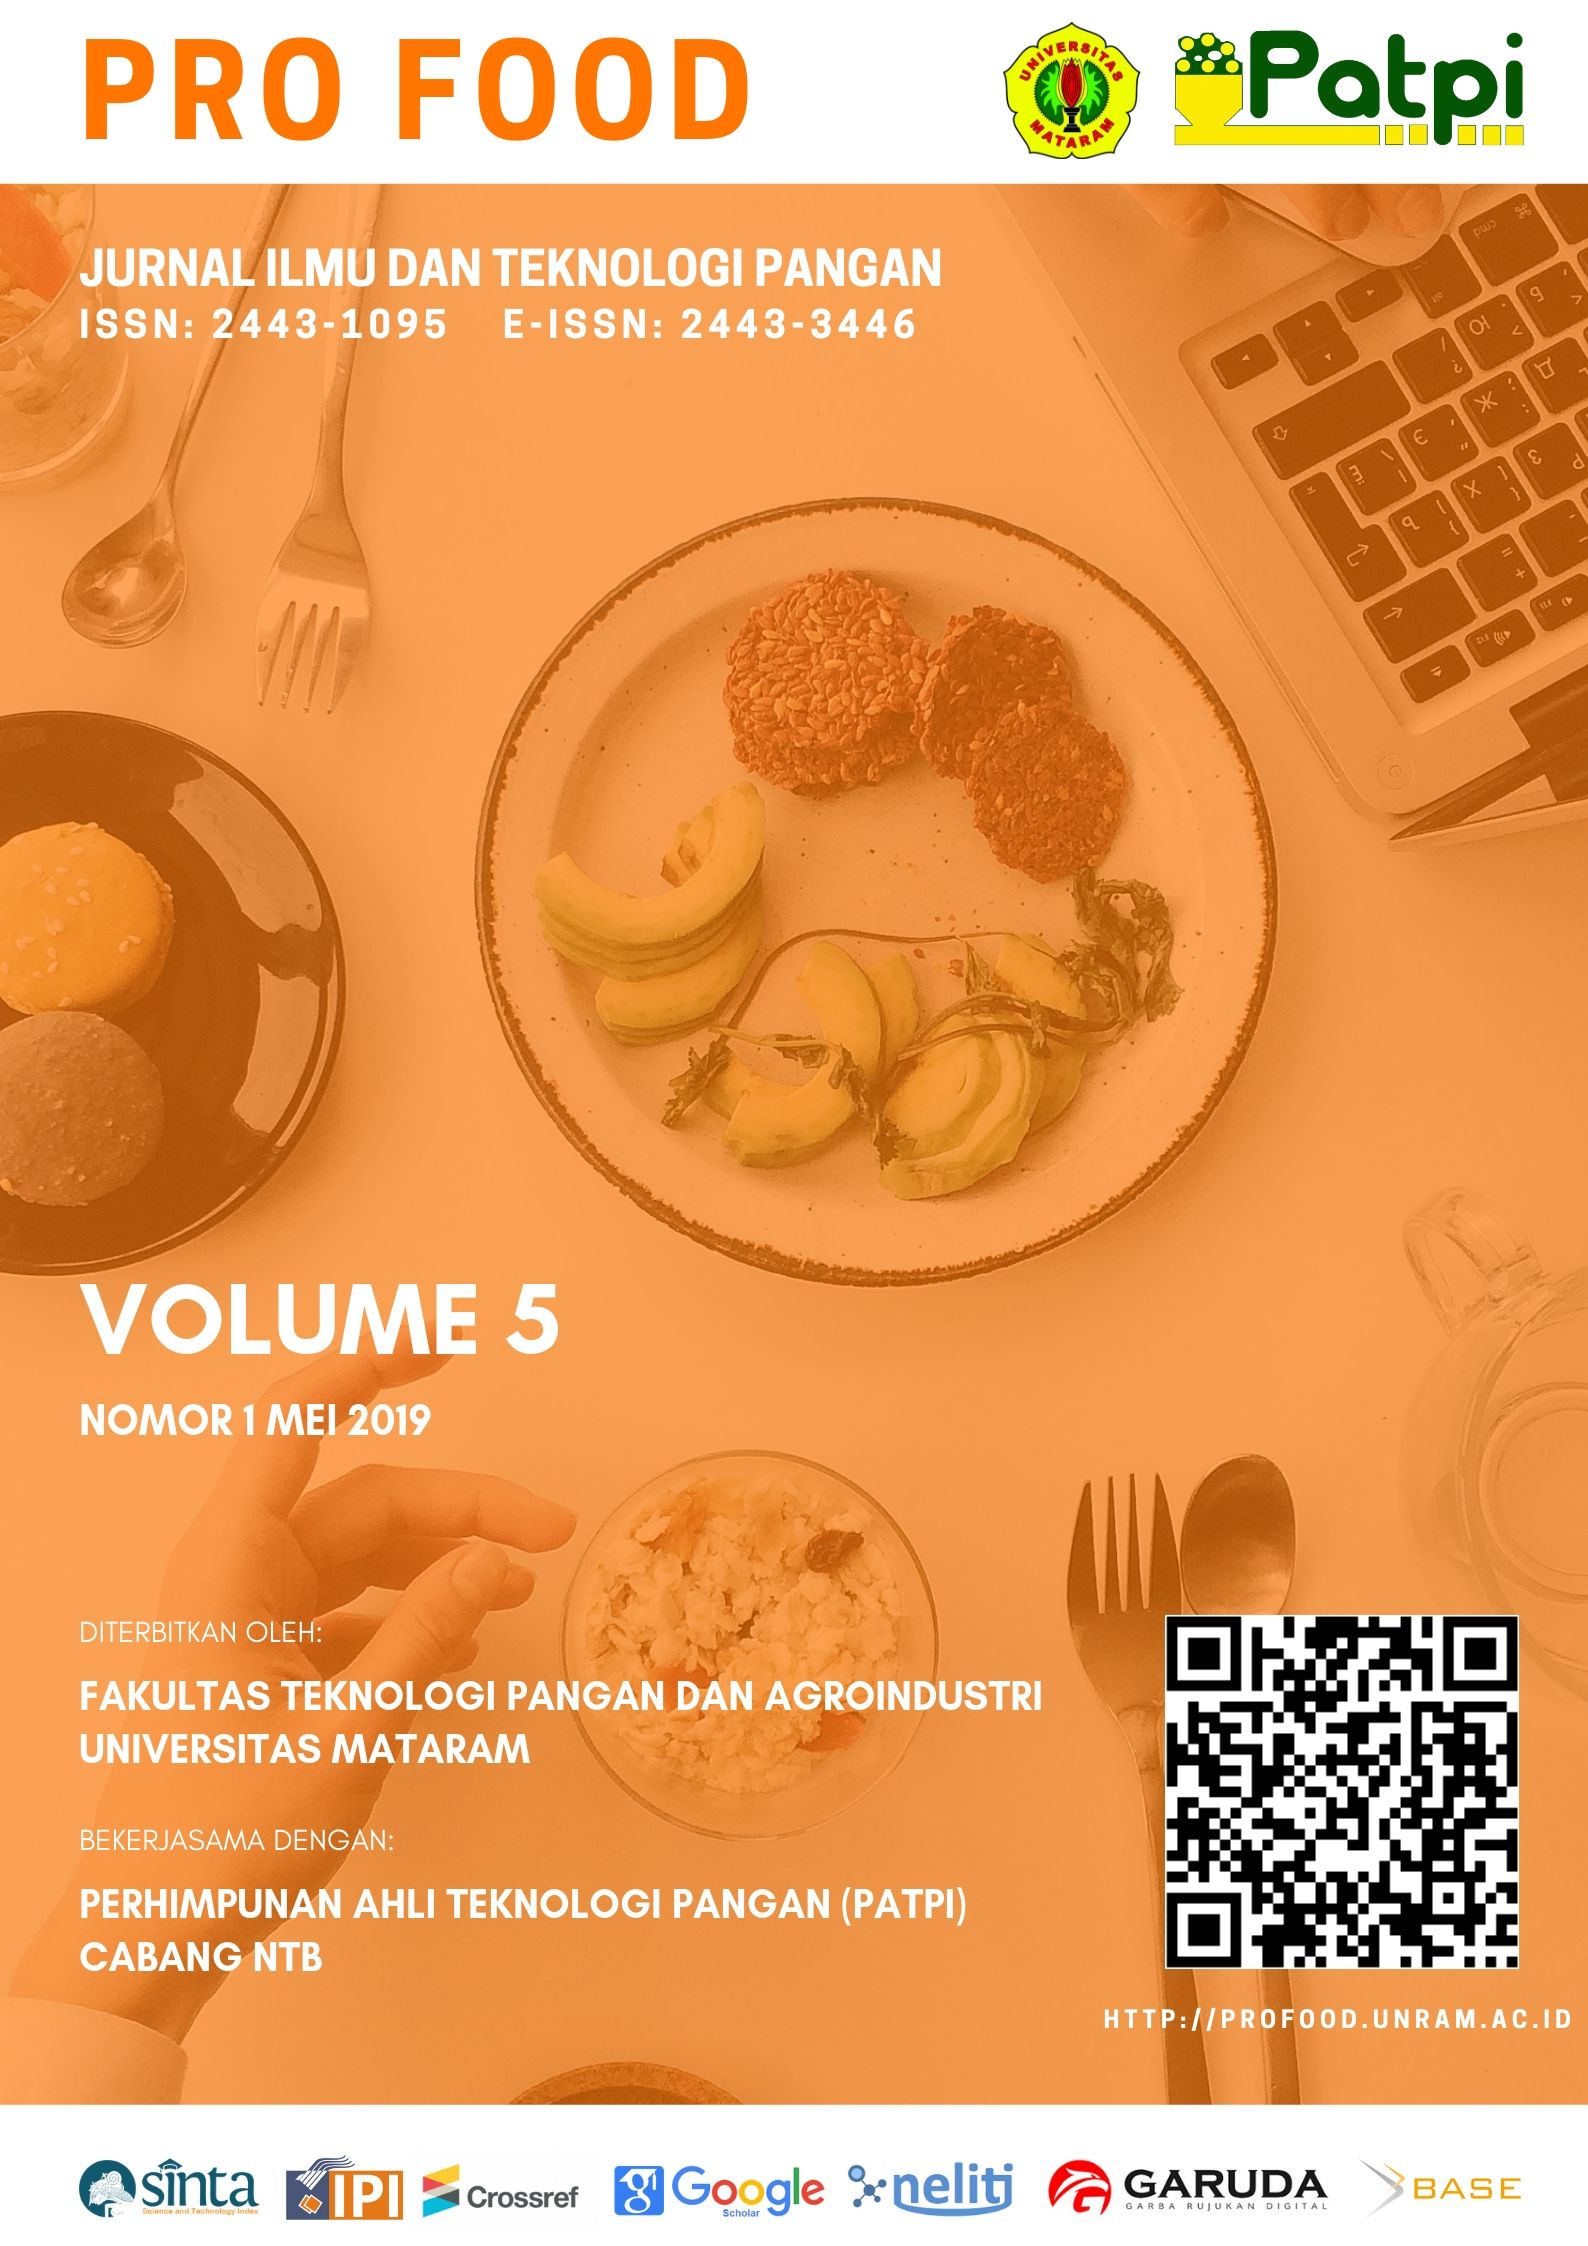 					Lihat Vol 5 No 1 (2019): Pro Food (Jurnal Ilmu dan Teknologi Pangan)
				